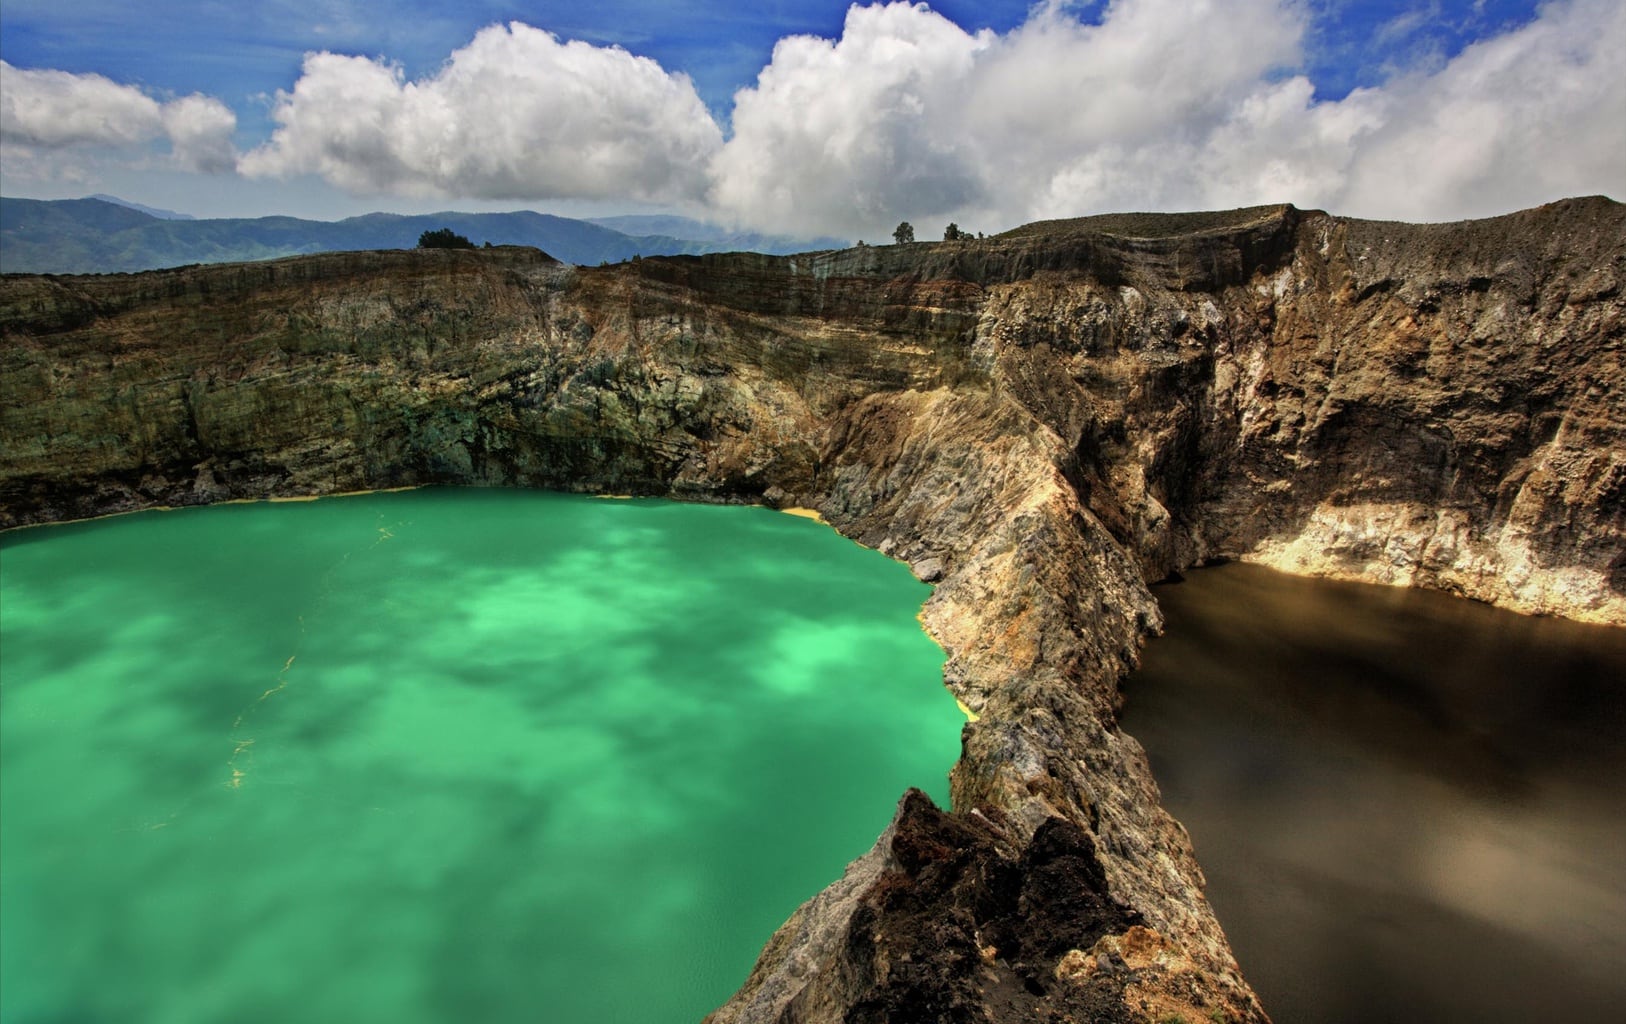 Kelimutu crater lakes